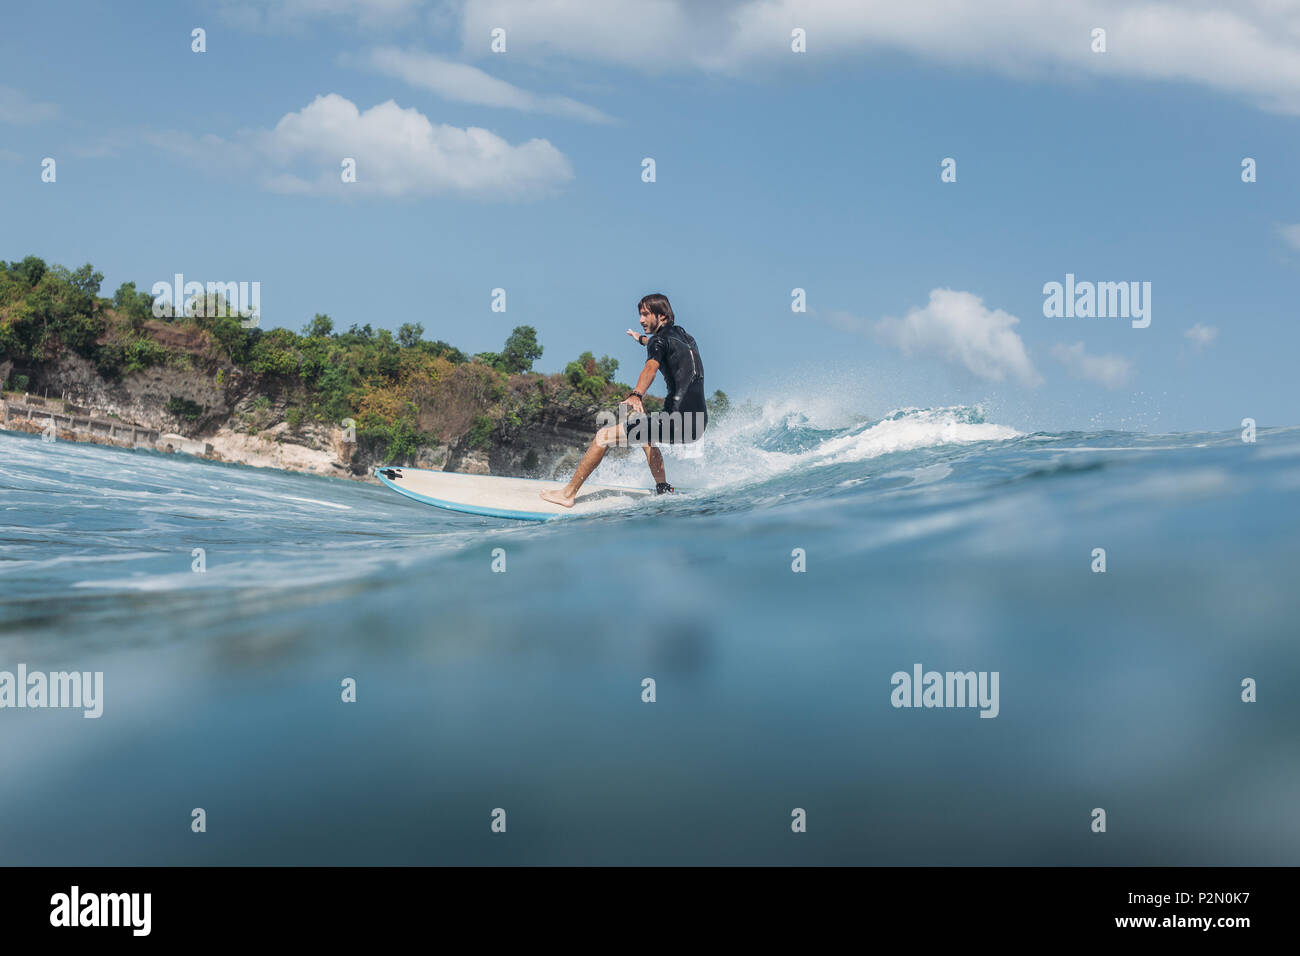 Aktiven Mann auf Surfbrett surfen Welle im Ozean Stockfoto